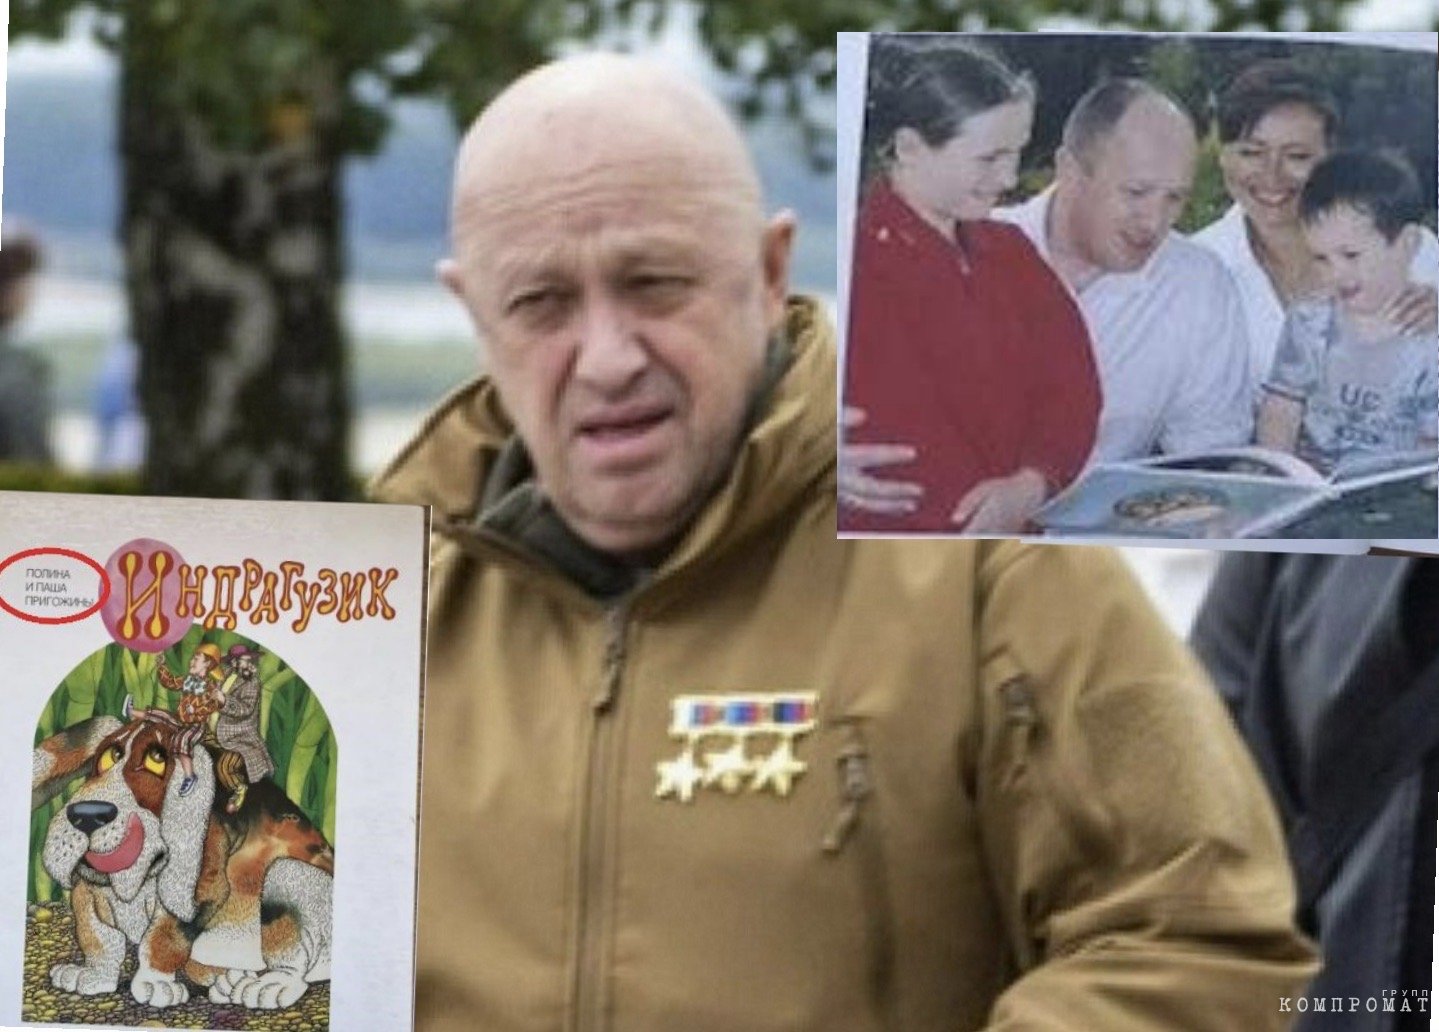 Евгений Пригожин, настоящий автор «Индрагузиков», и семейное фото из книги